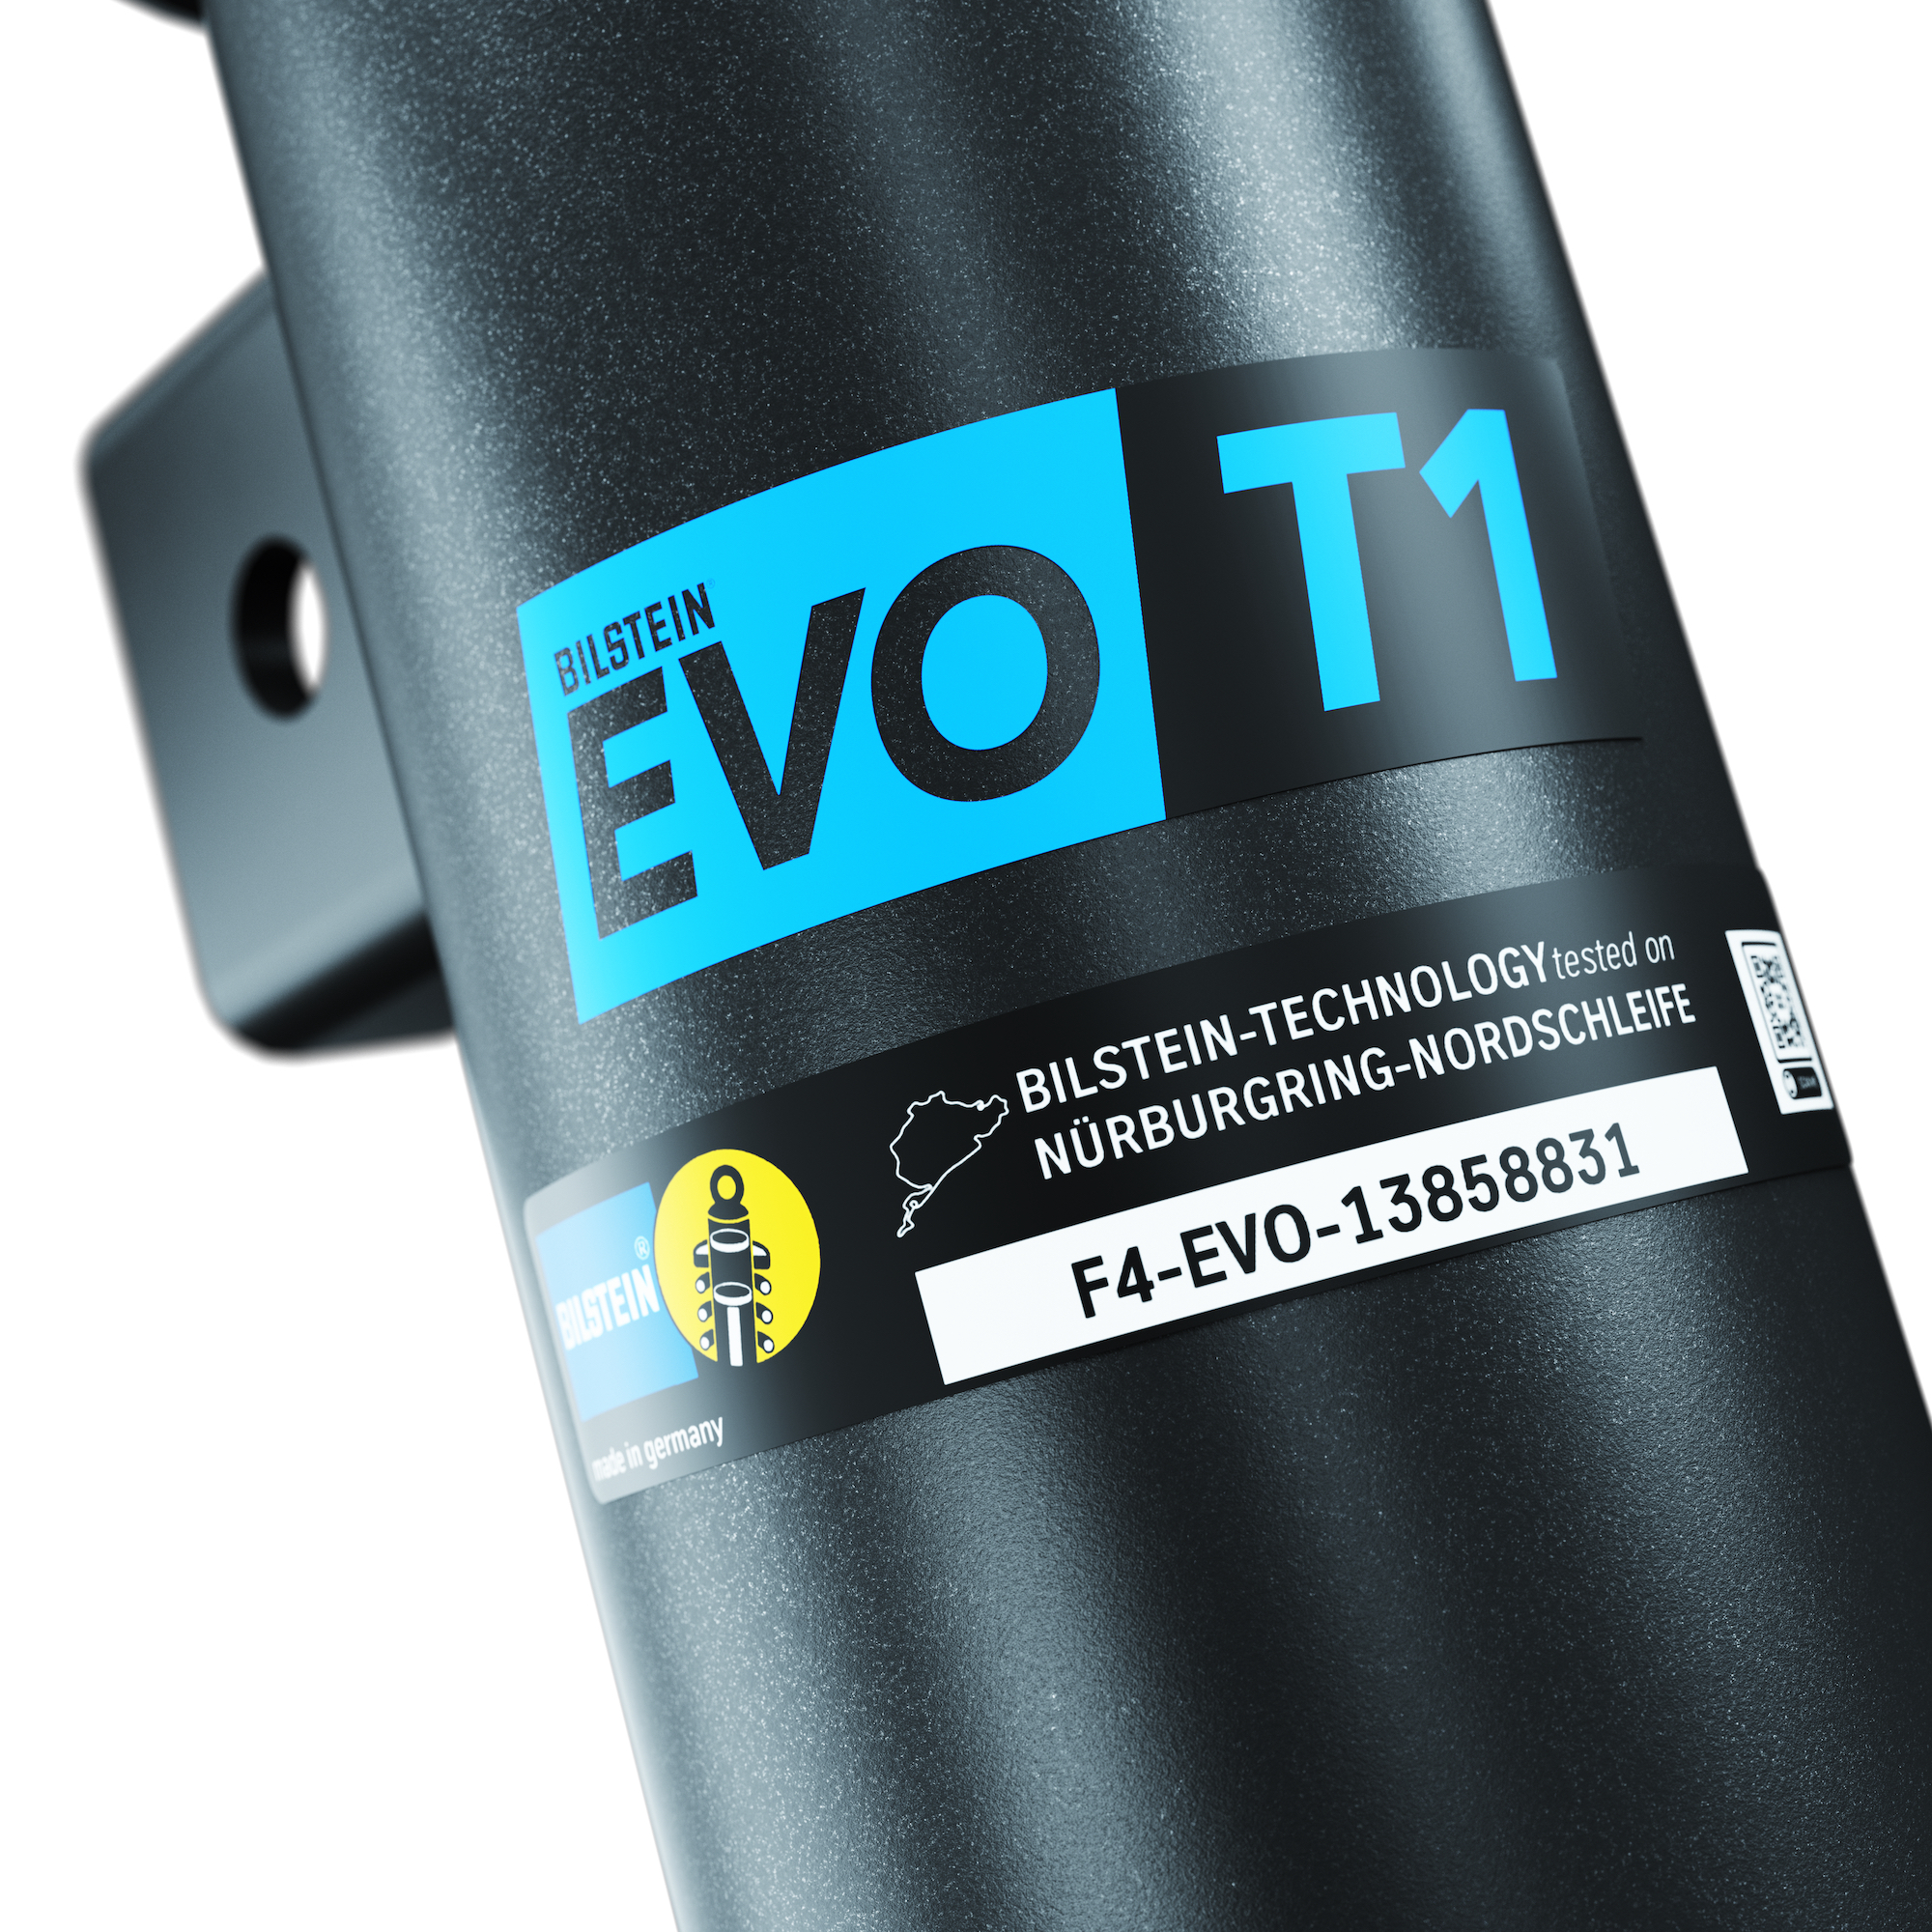 The new BILSTEIN EVO T1 coilover suspension: Perfect for track